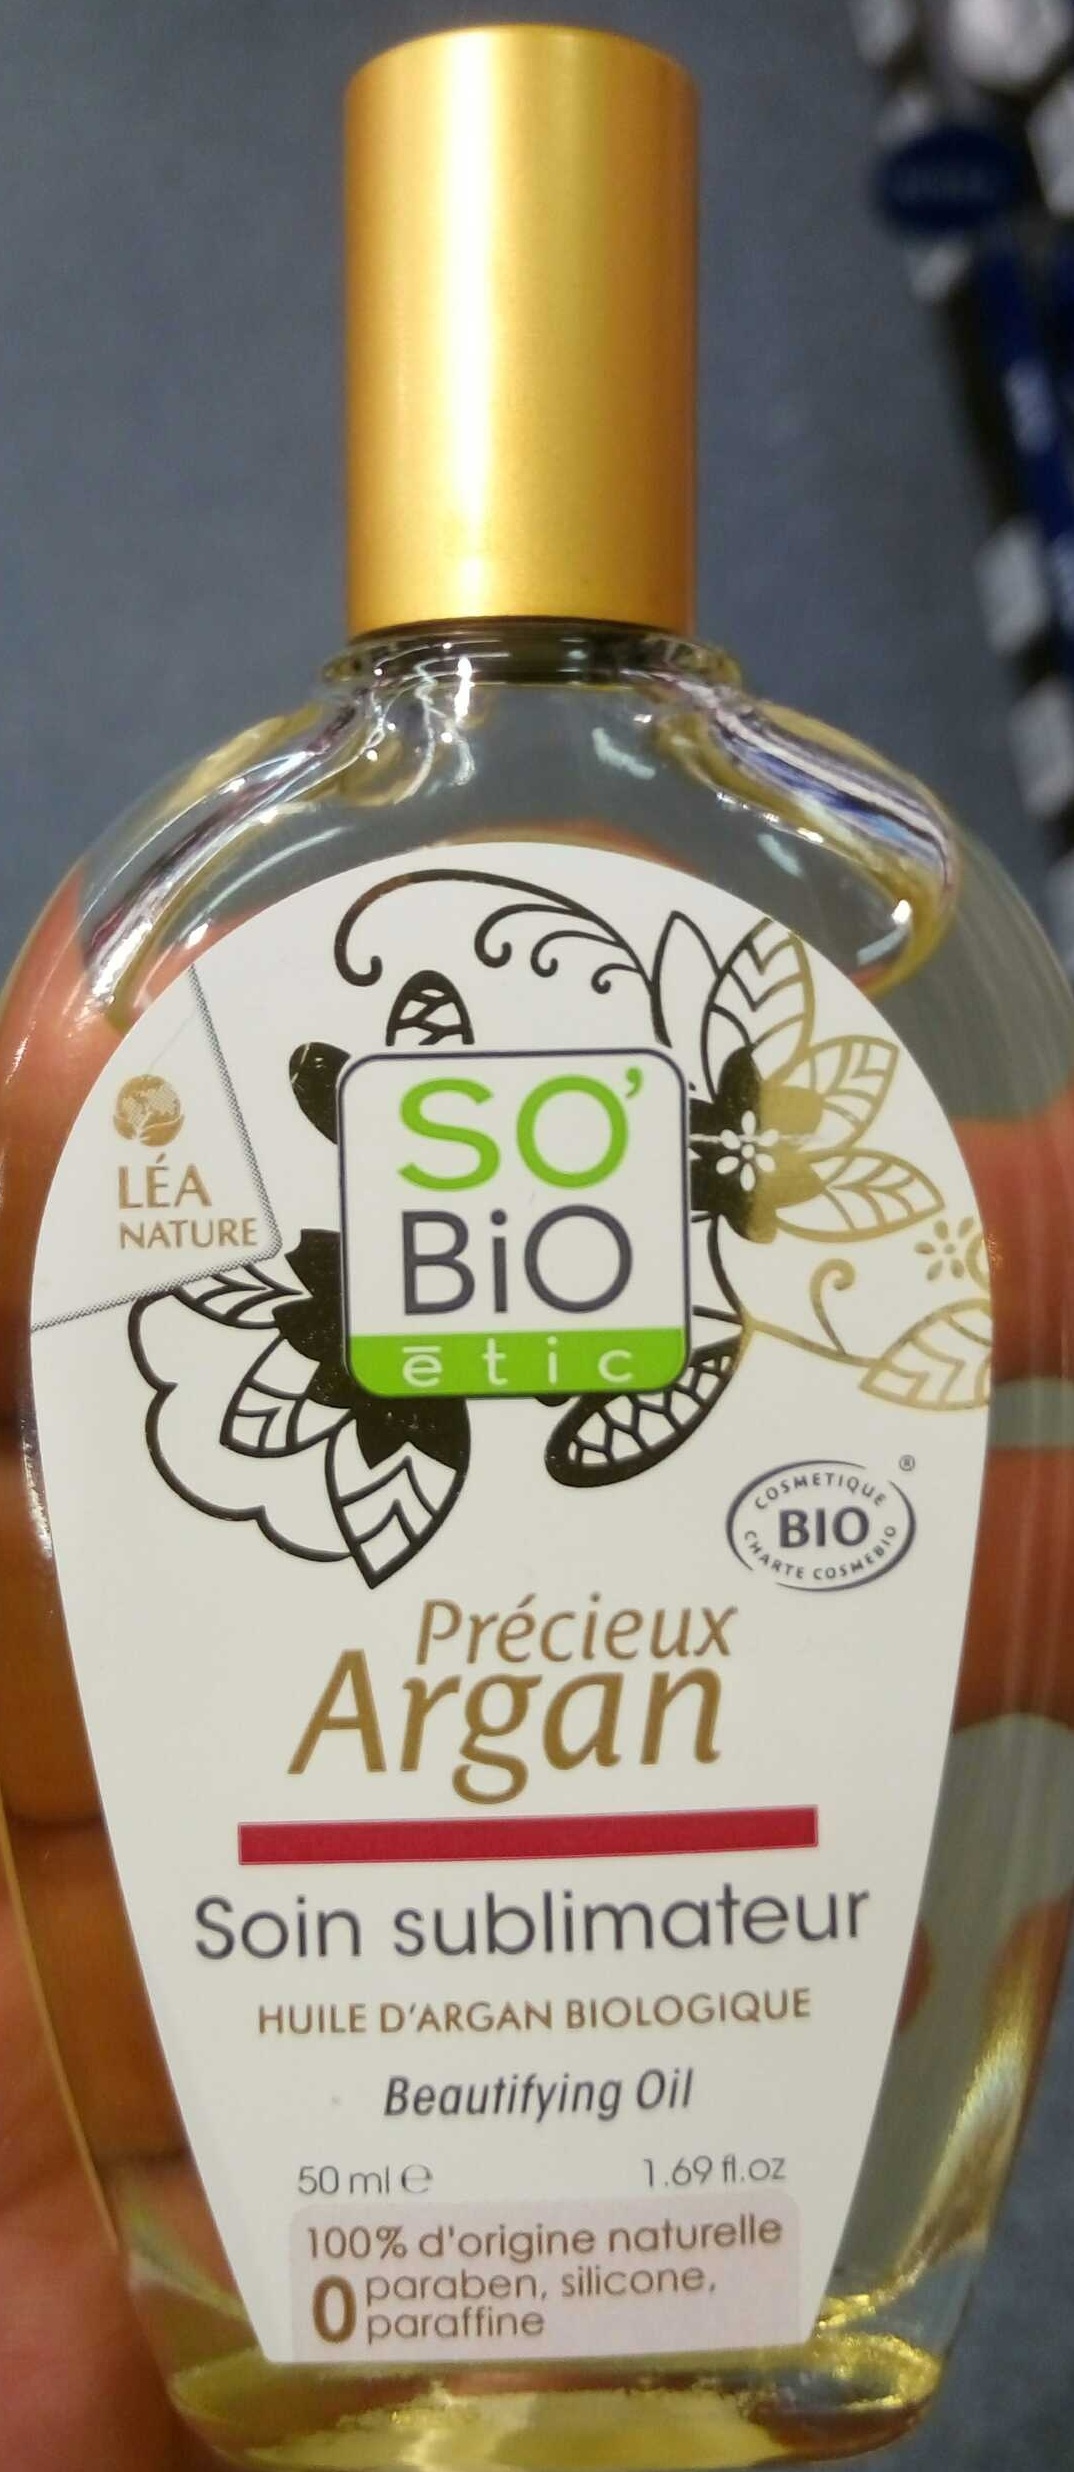 Précieux argan Soin sublimateur - Product - fr